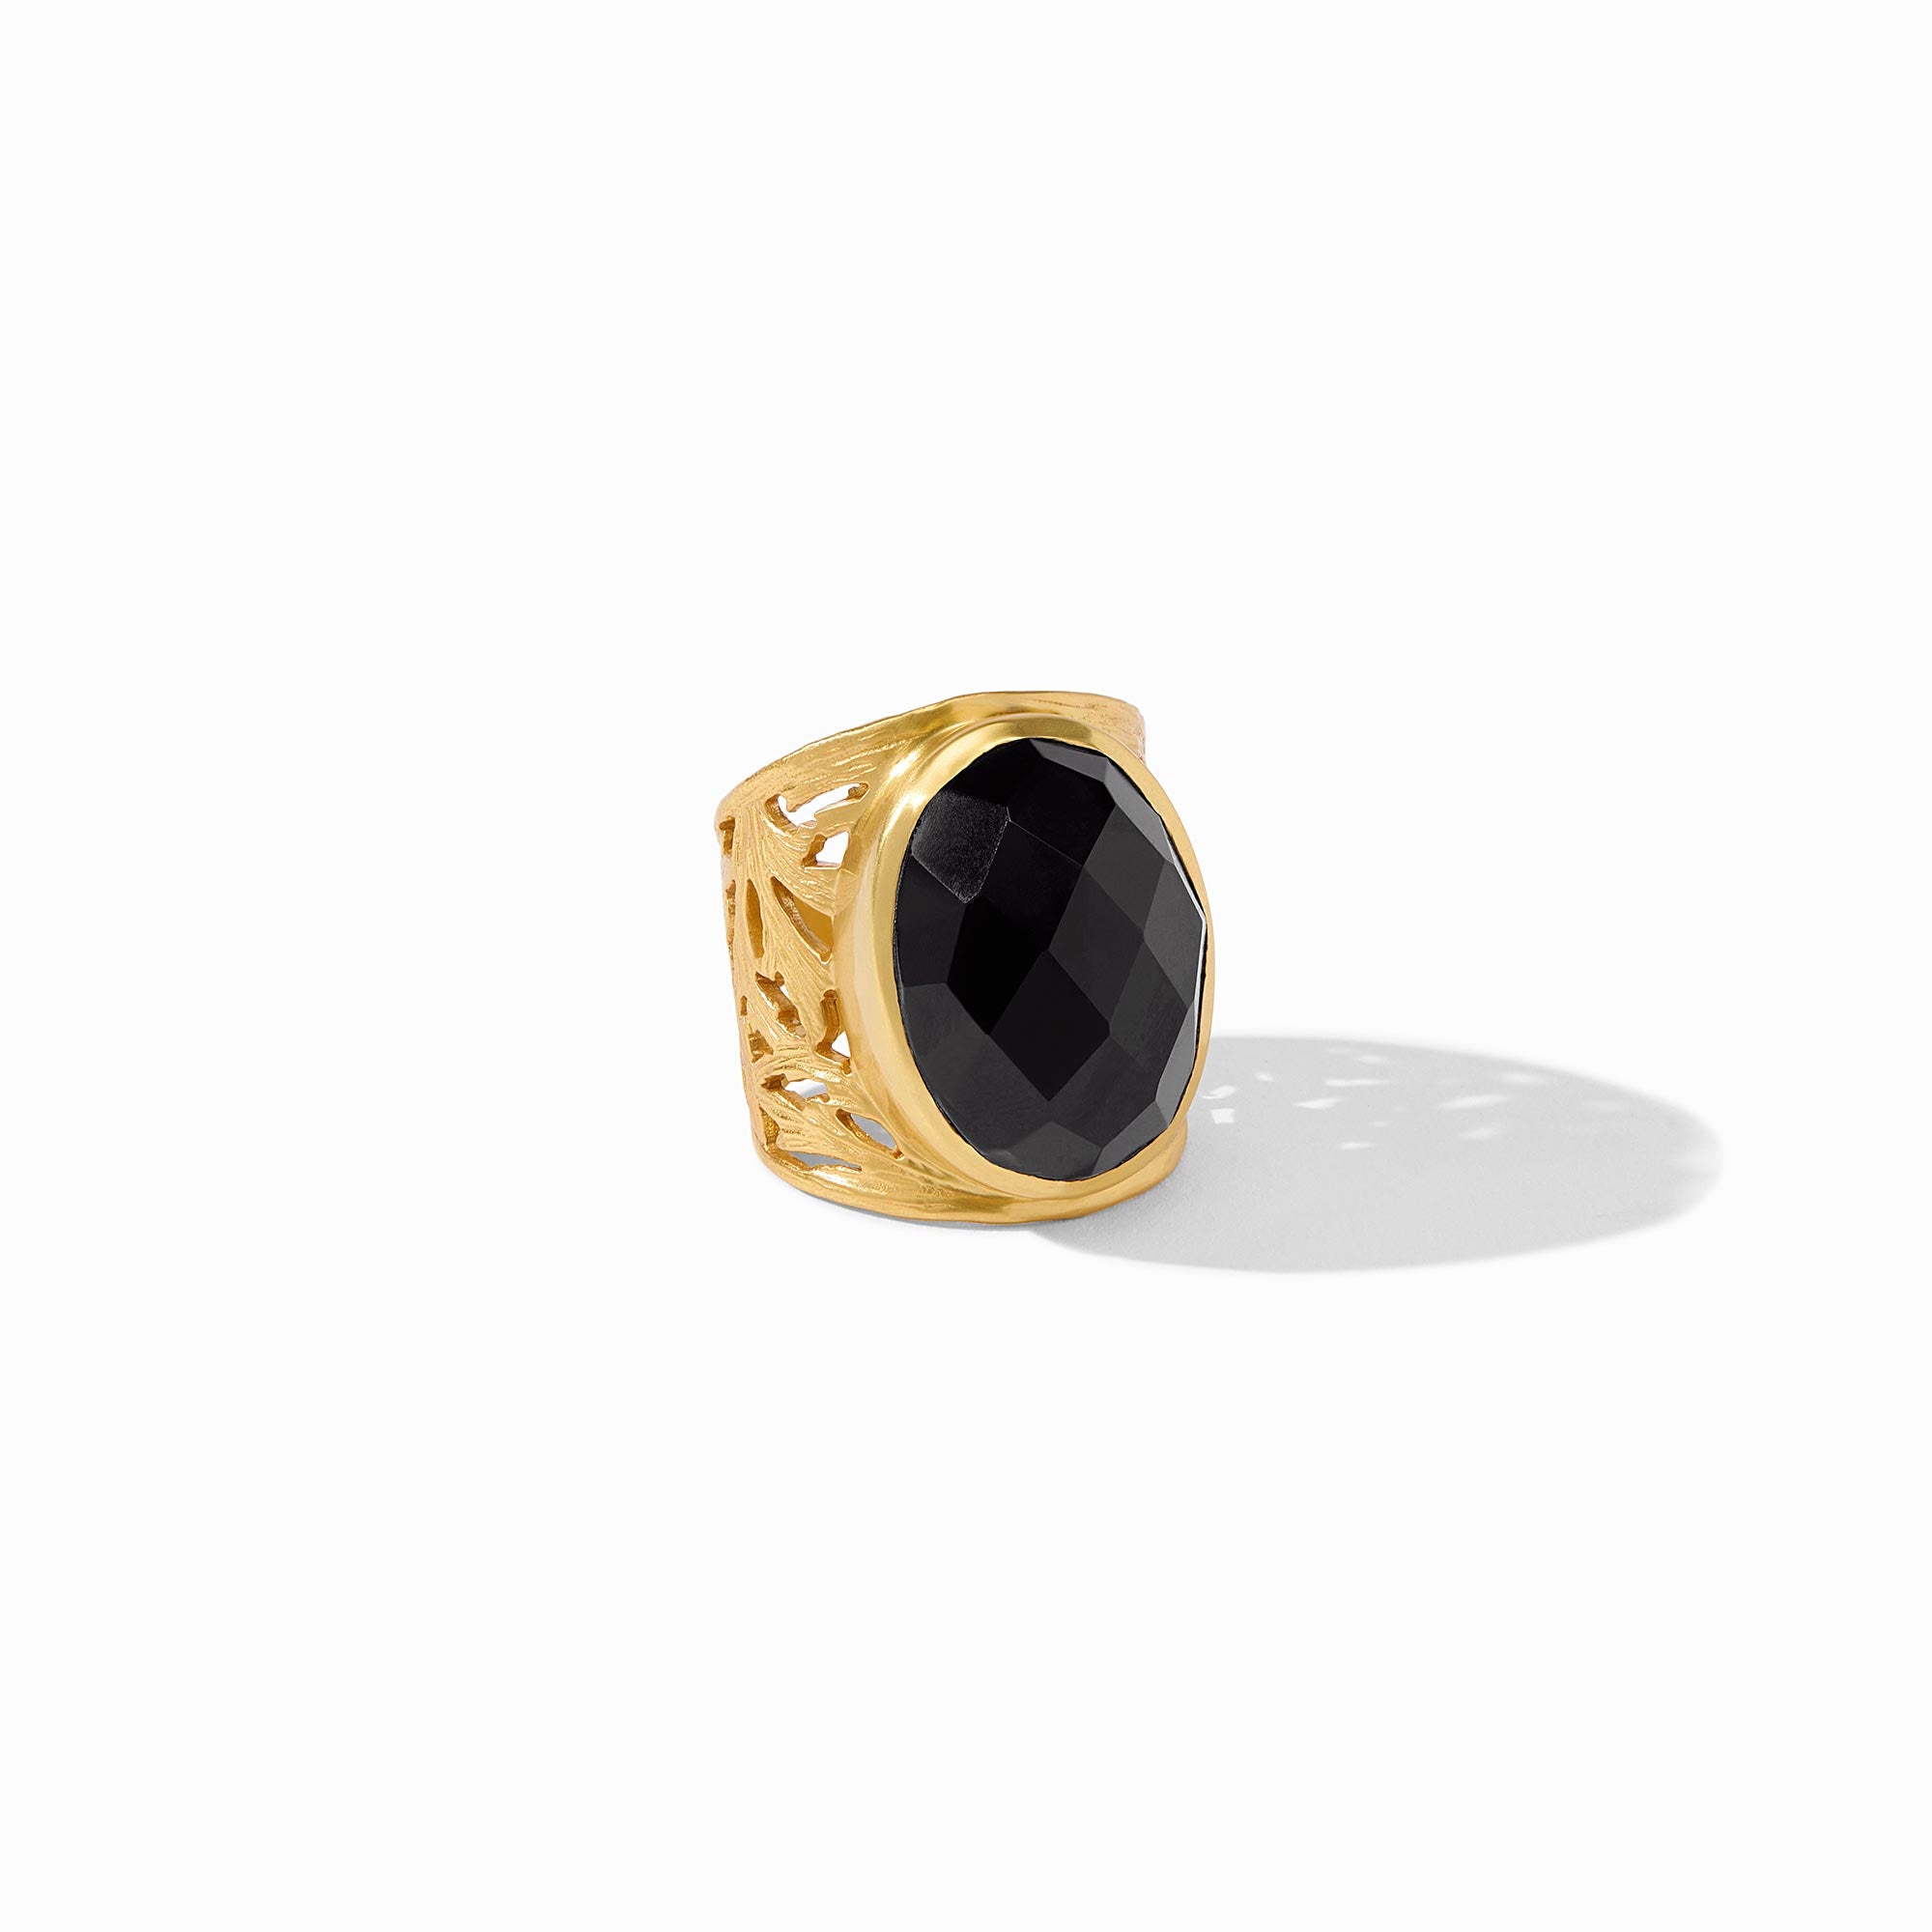 Julie Vos - Ivy Statement Ring, Obsidian Black / 9